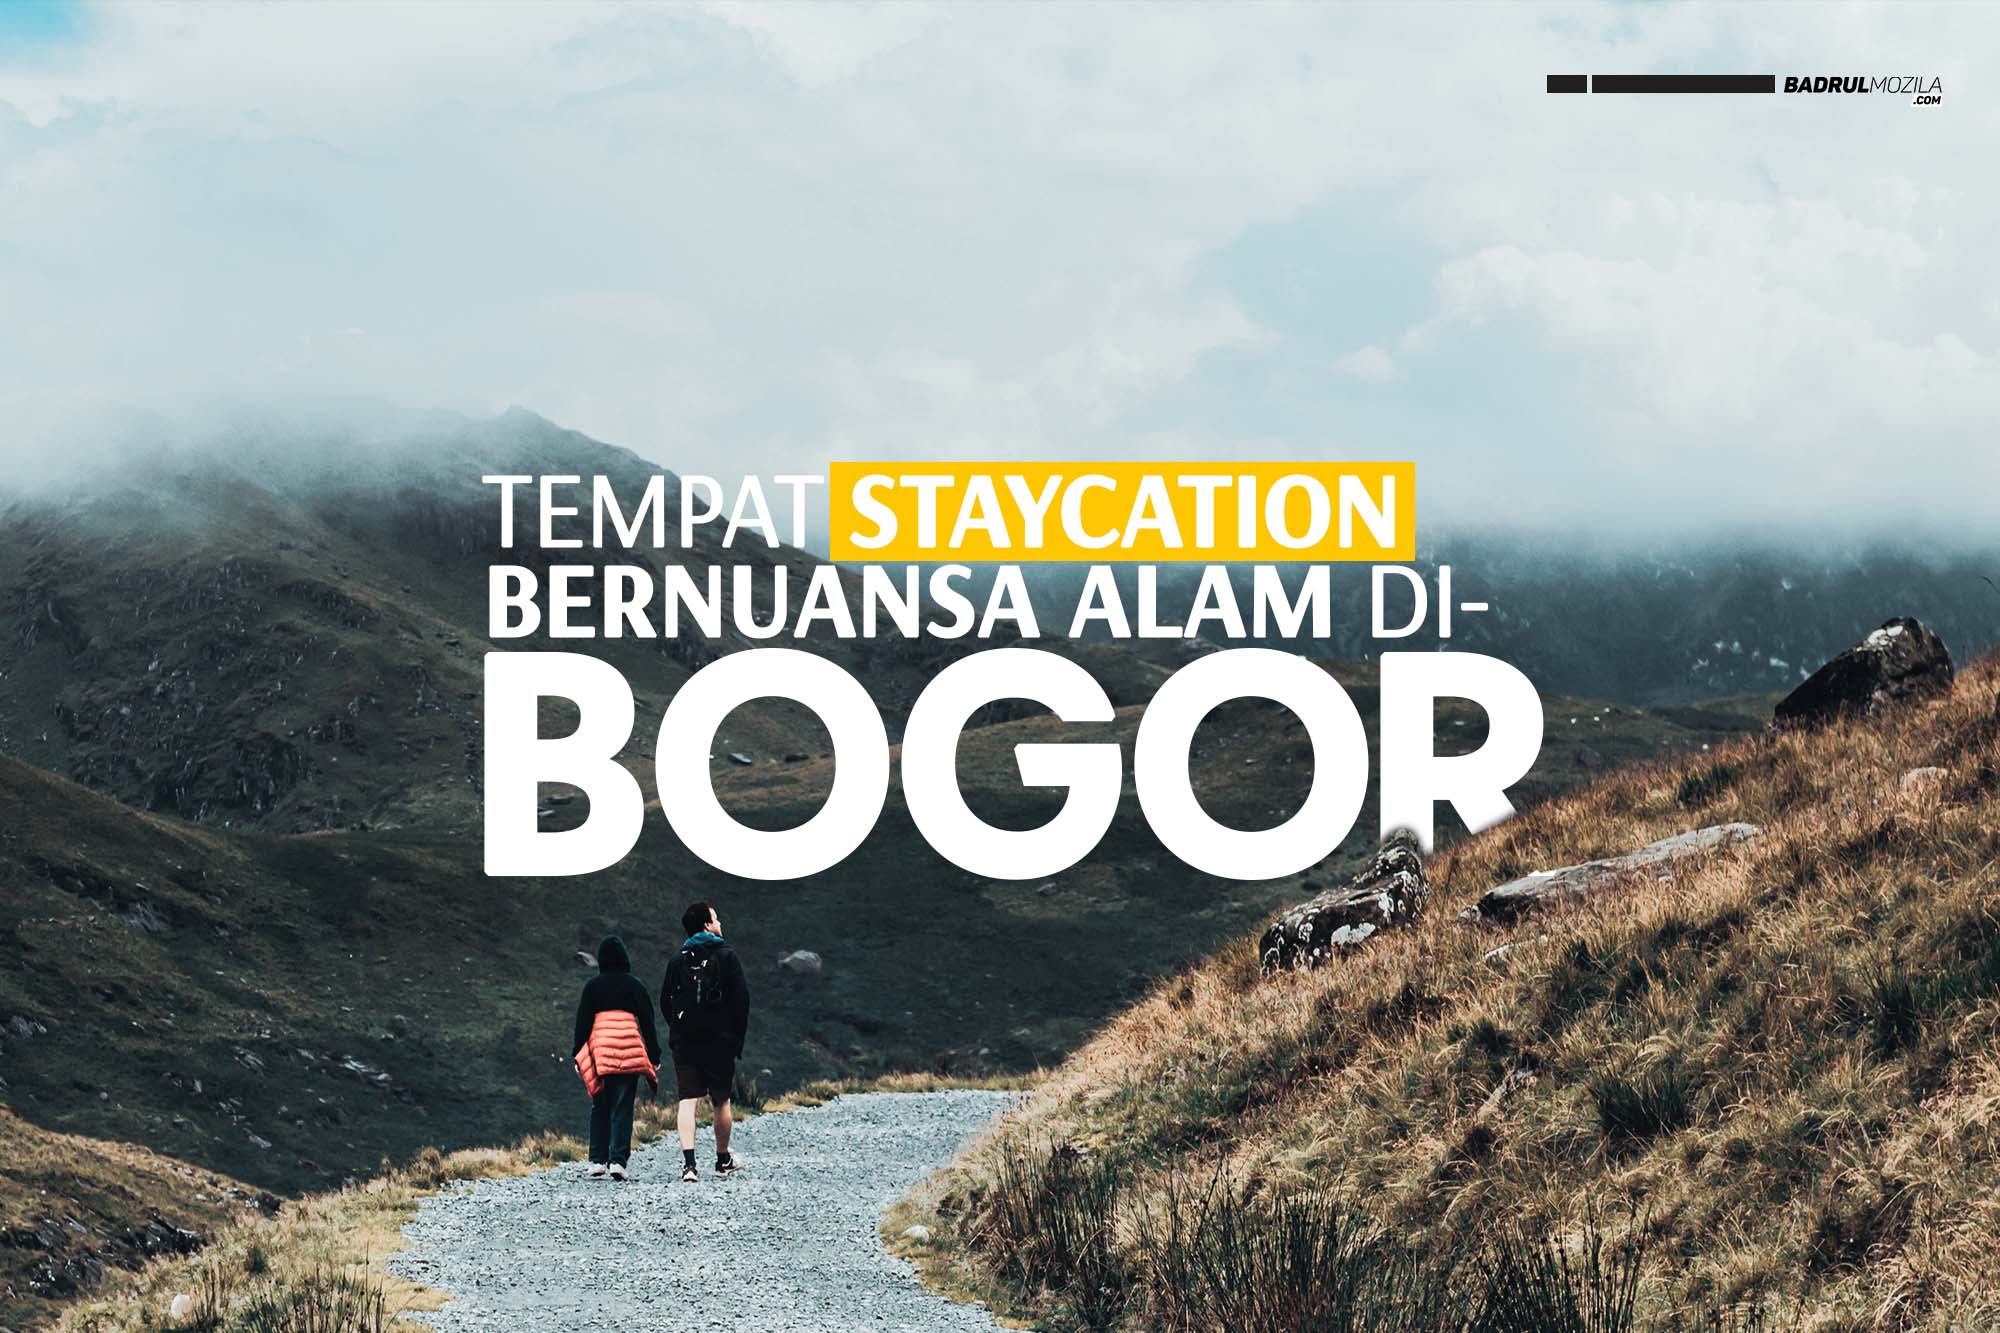 Tempat Staycation Bernuansa Alam di Bogor